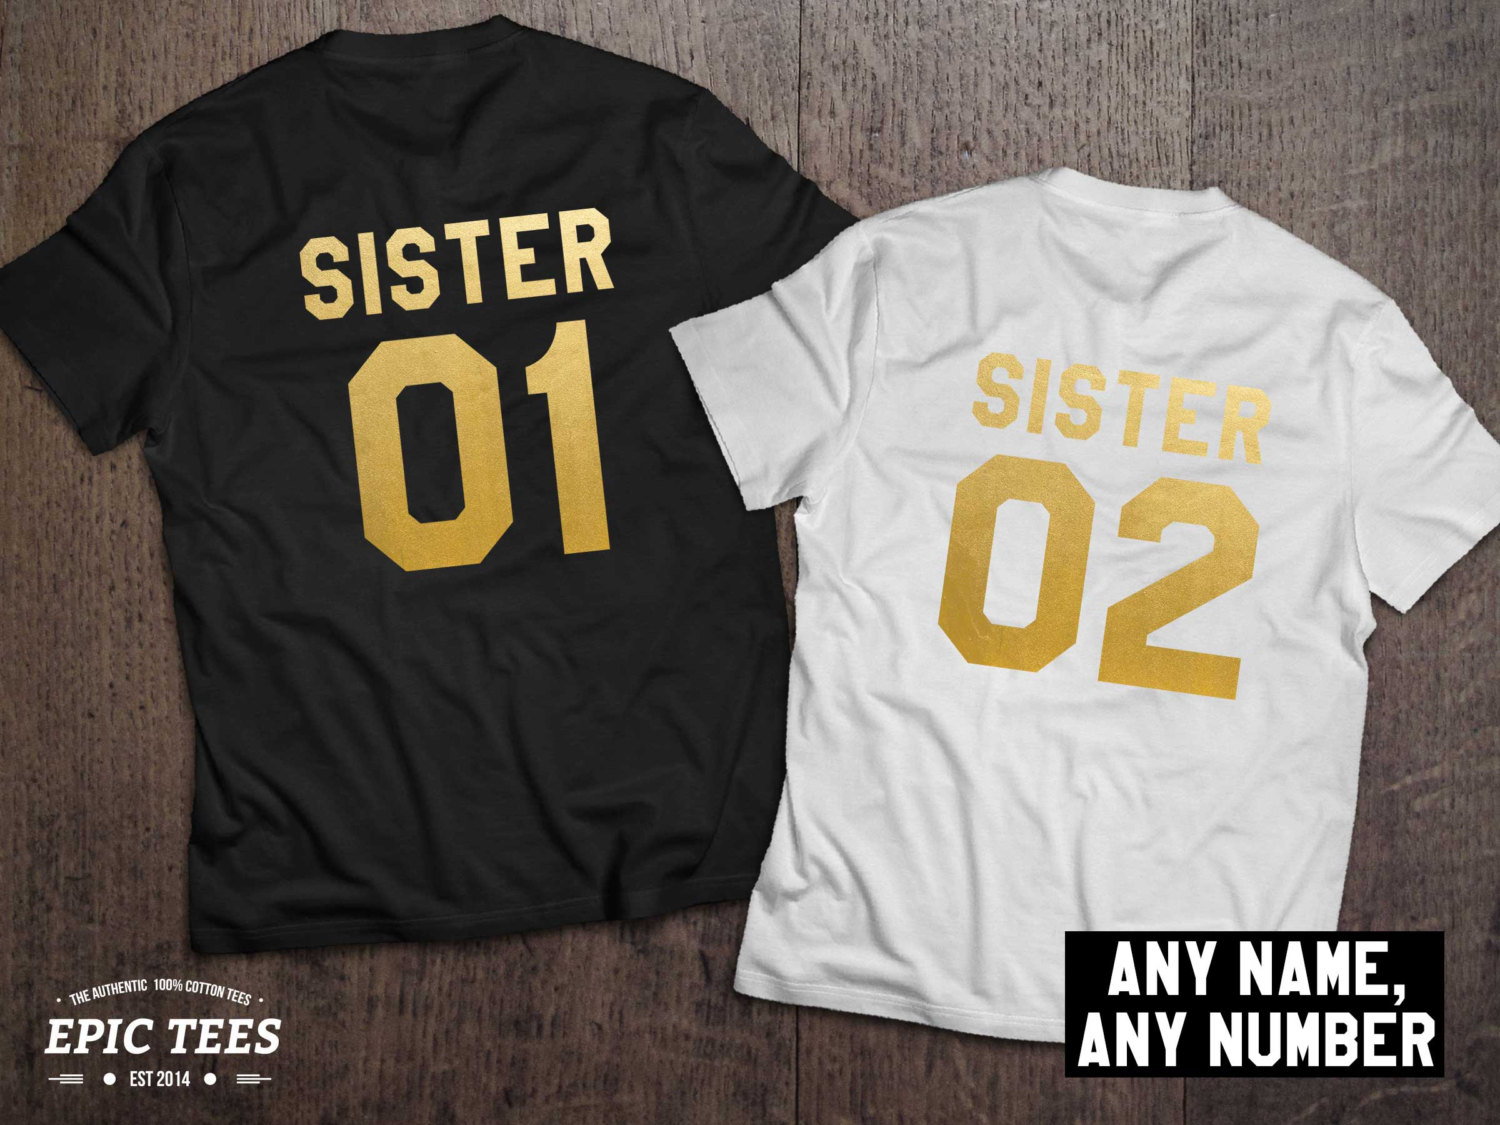 tee shirt sister 01